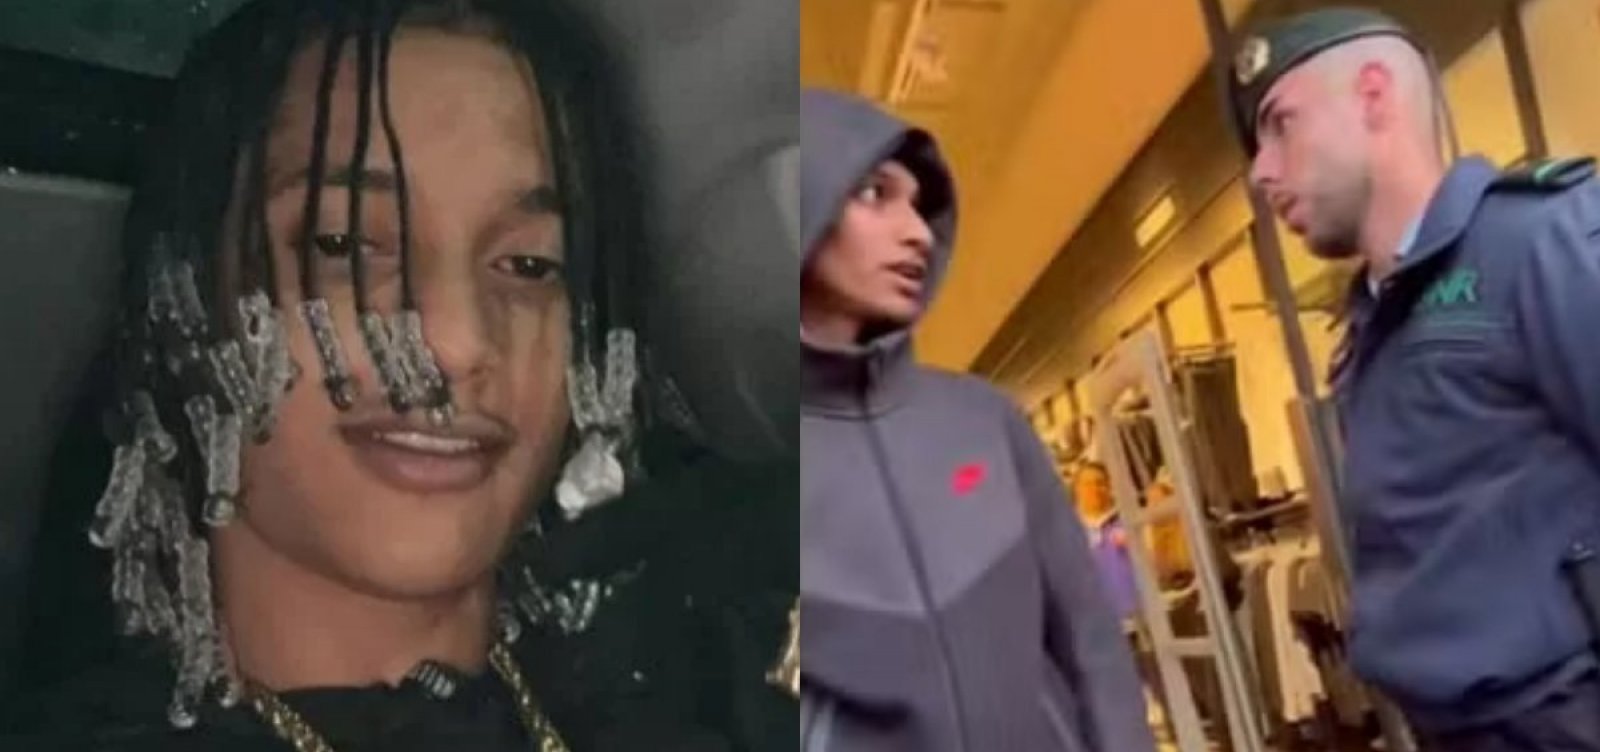 Filho do traficante Marcinho VP, rapper Oruam é abordado por policiais em shopping em Portugal – Metro 1